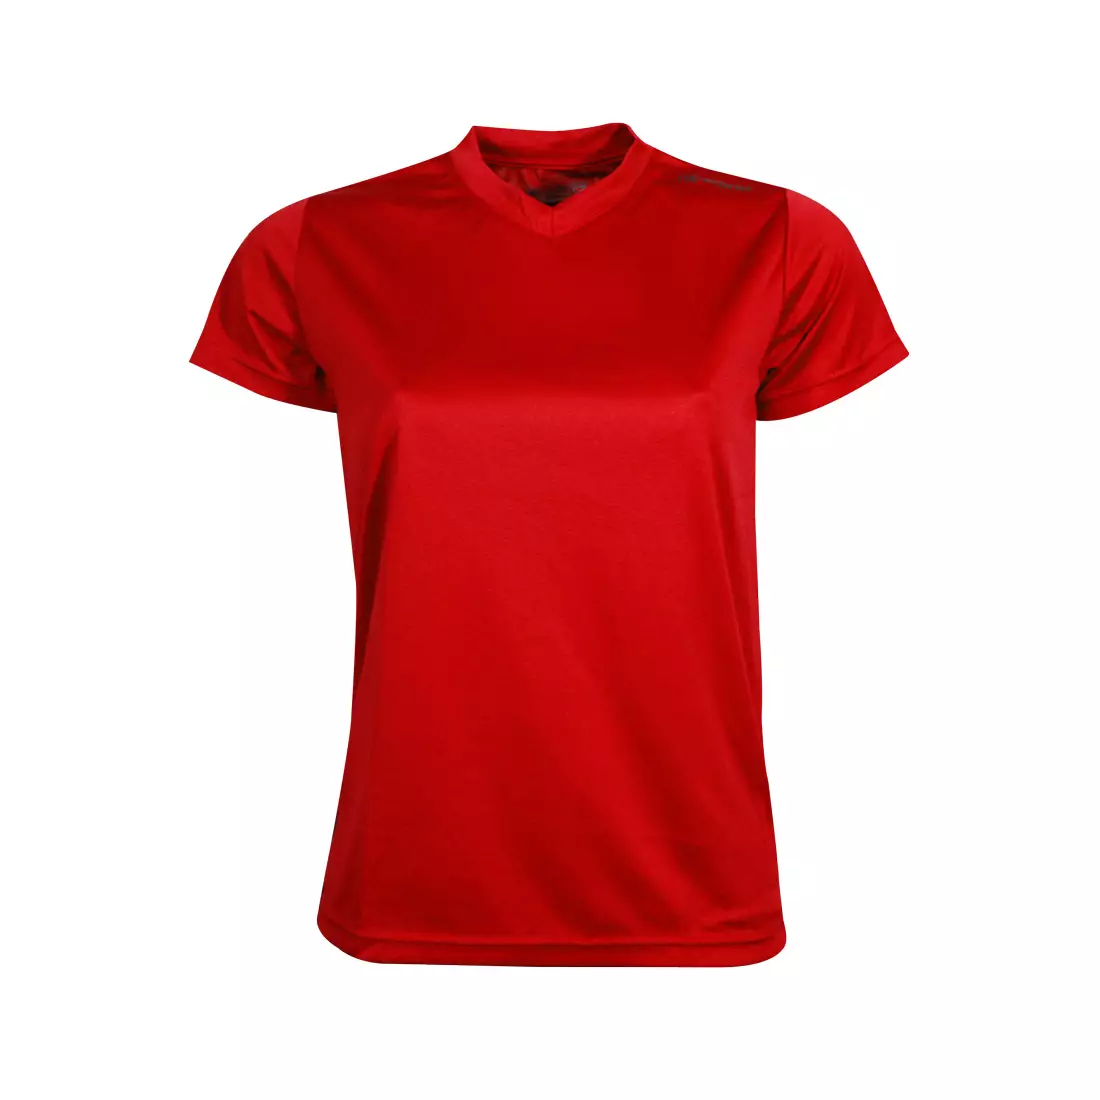 NEWLINE BASE COOL TRIČKO - dámské běžecké tričko 13614-04